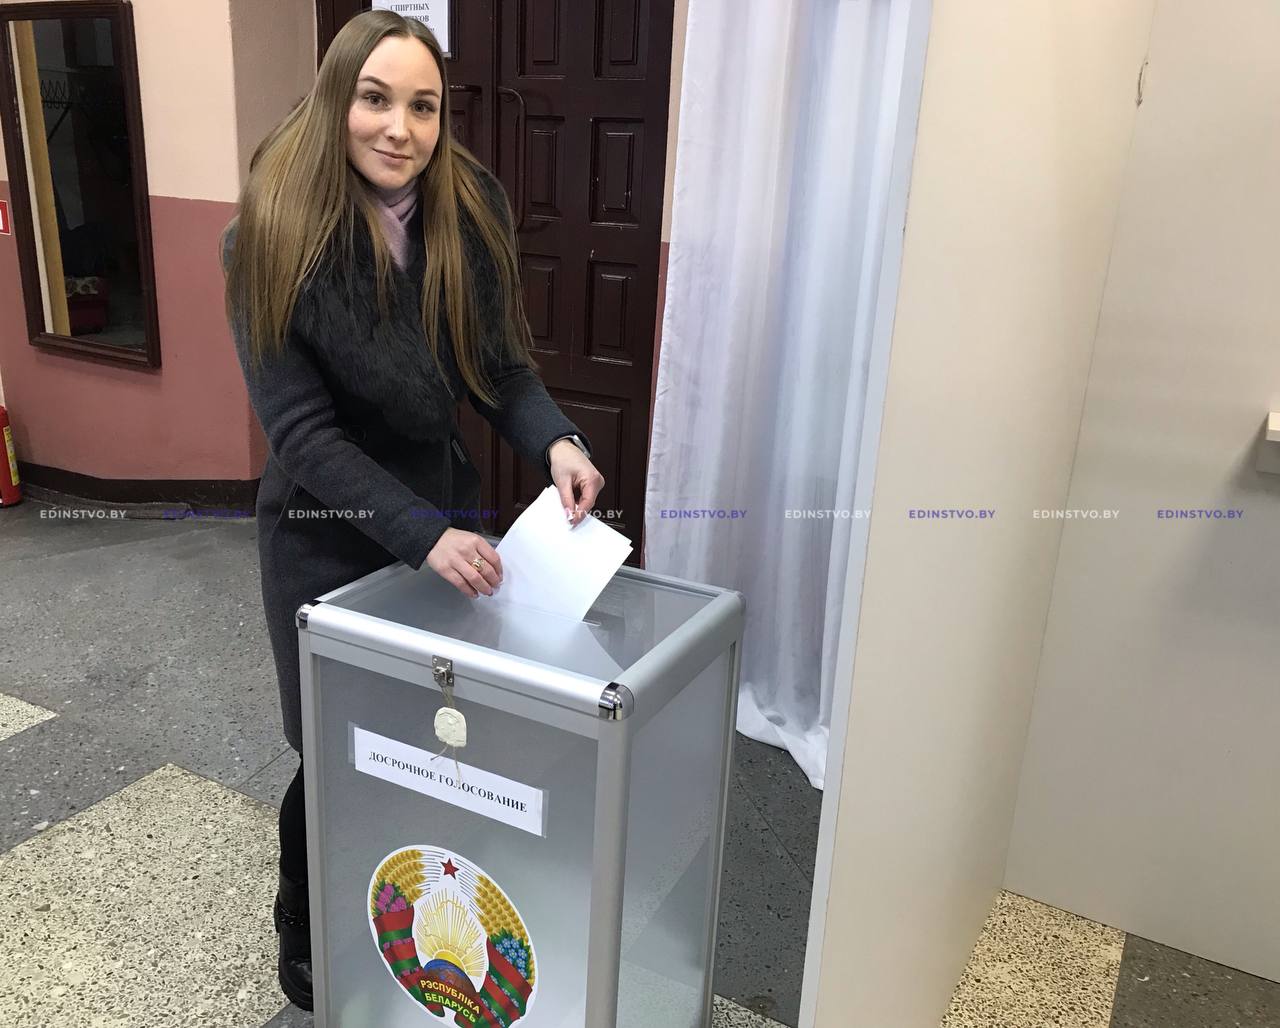 Член Молодежного парламента Екатерина Антоненко не осталась в стороне от важного политического события страны